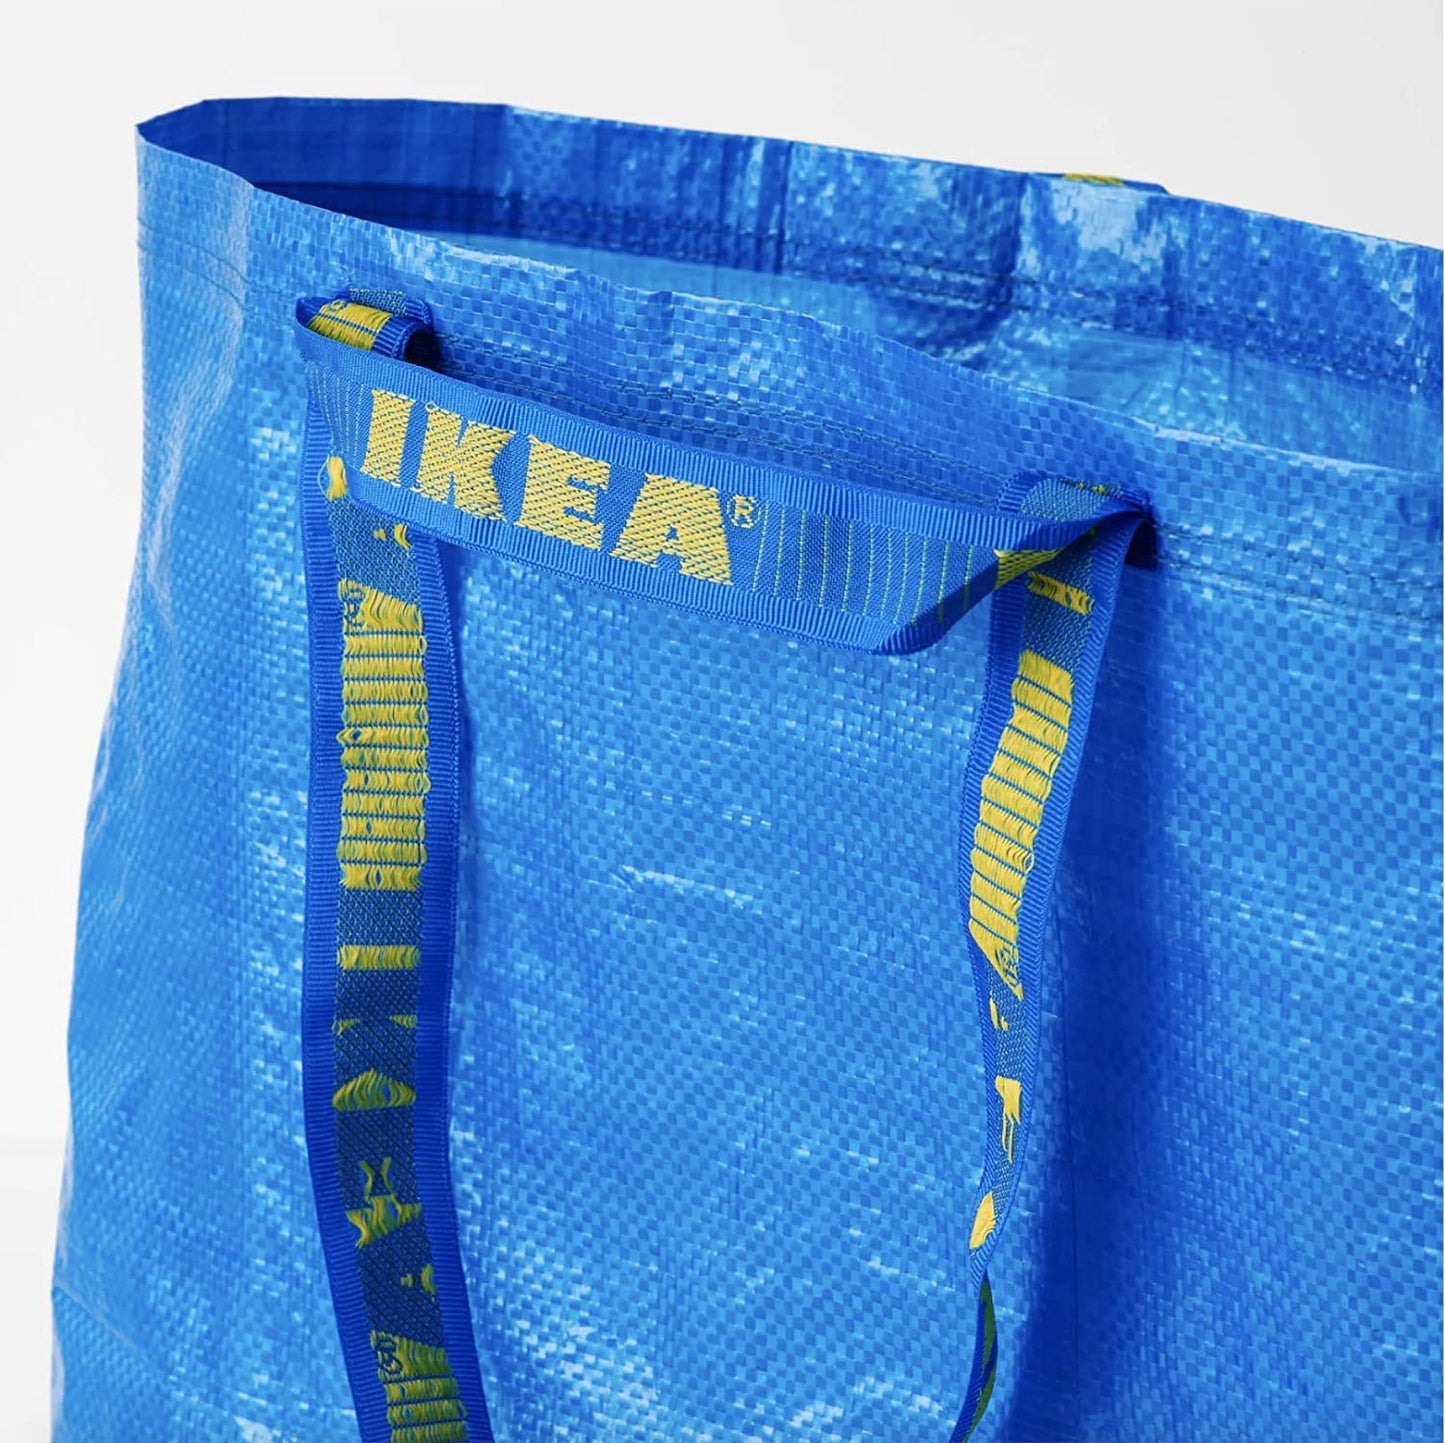 IKEA Frakta Medium Shopping Bags 4 Pack 10 Gal Blue Tote Multi Purpose Durable Material